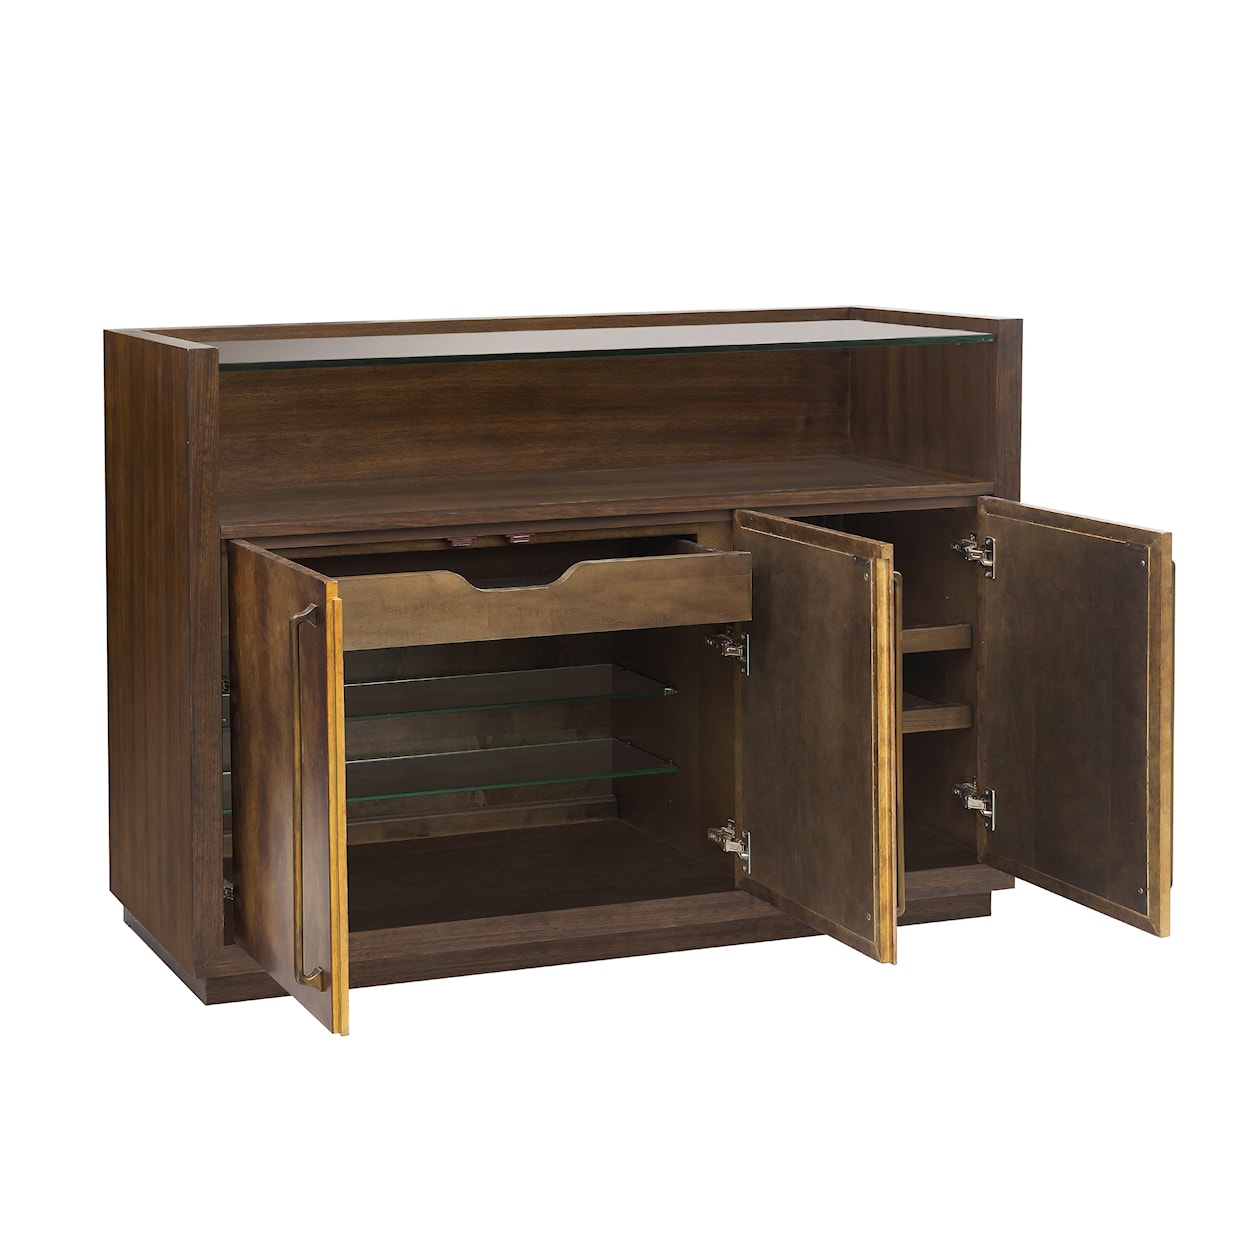 Pulaski Furniture Accents July 2021 Copper Bar Cabinet